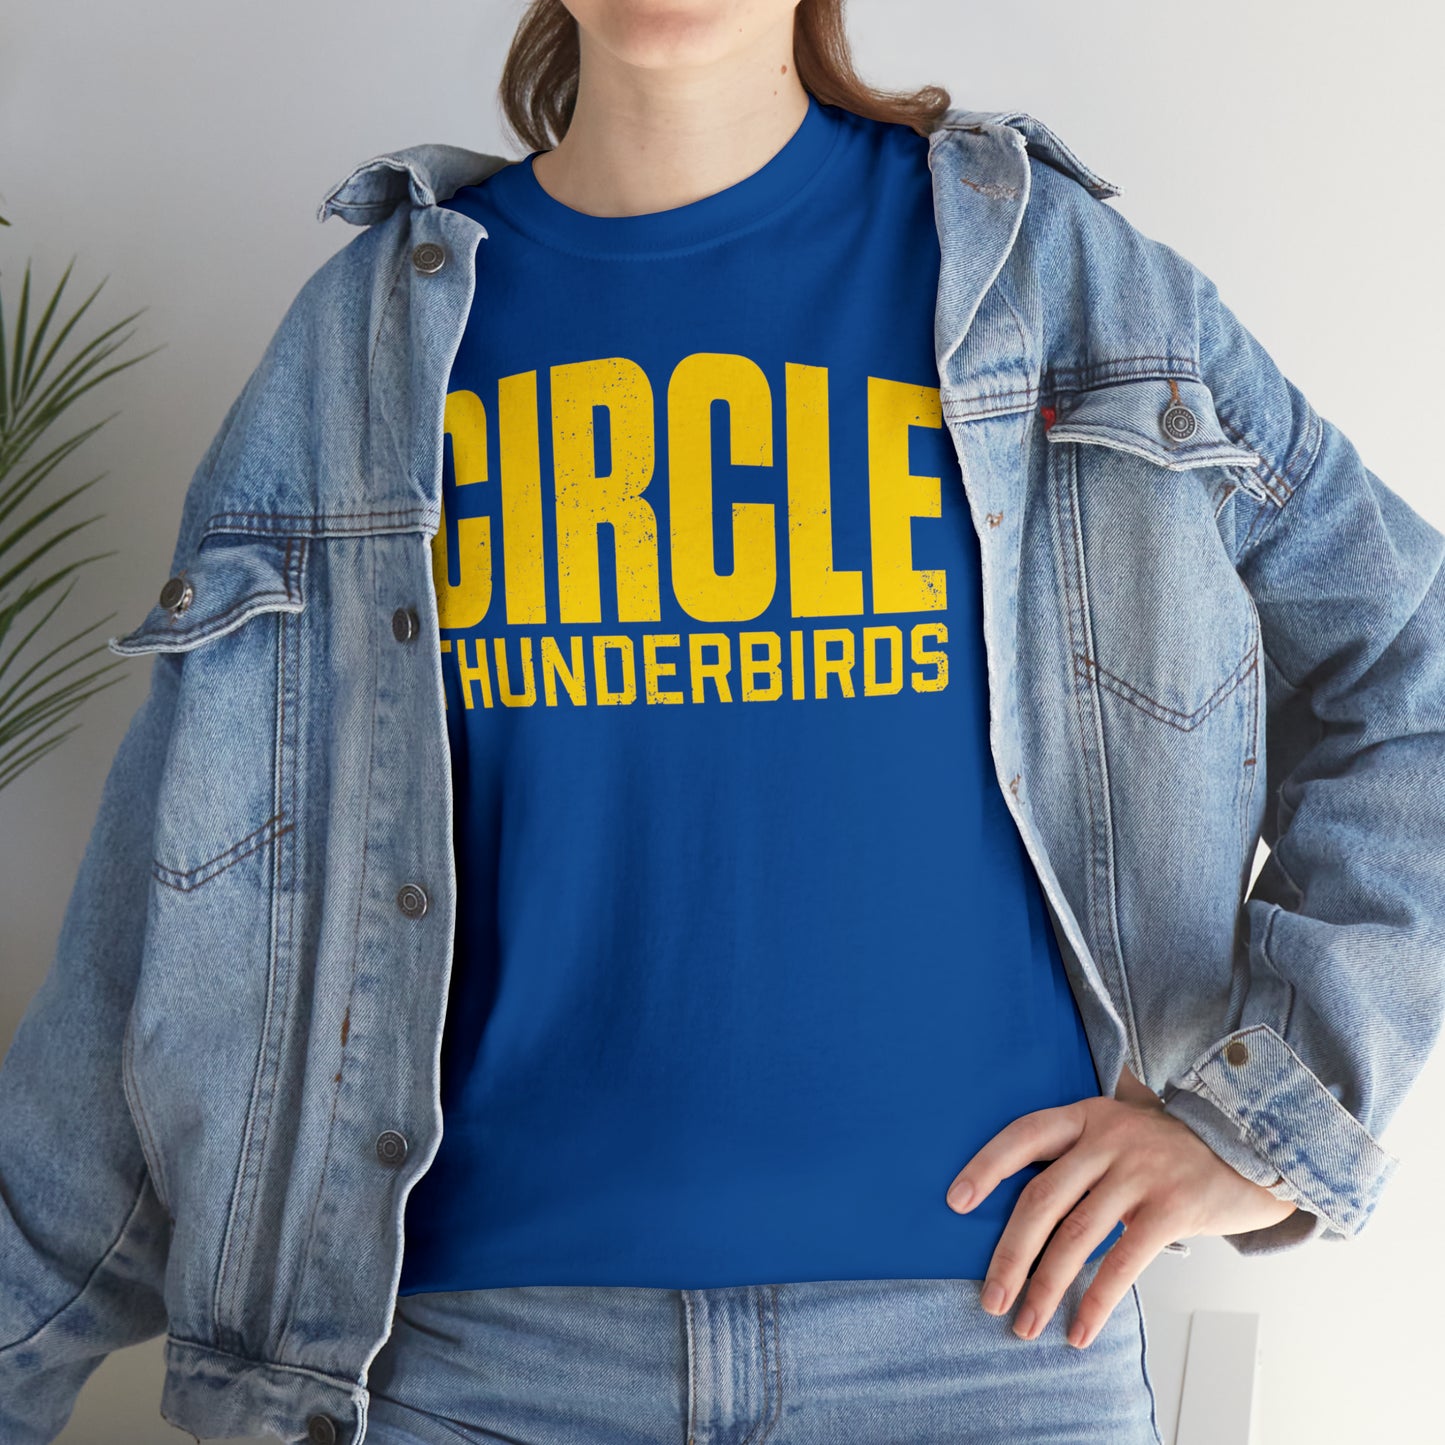 Circle Thunderbirds 2, Unisex Heavy Cotton Tee